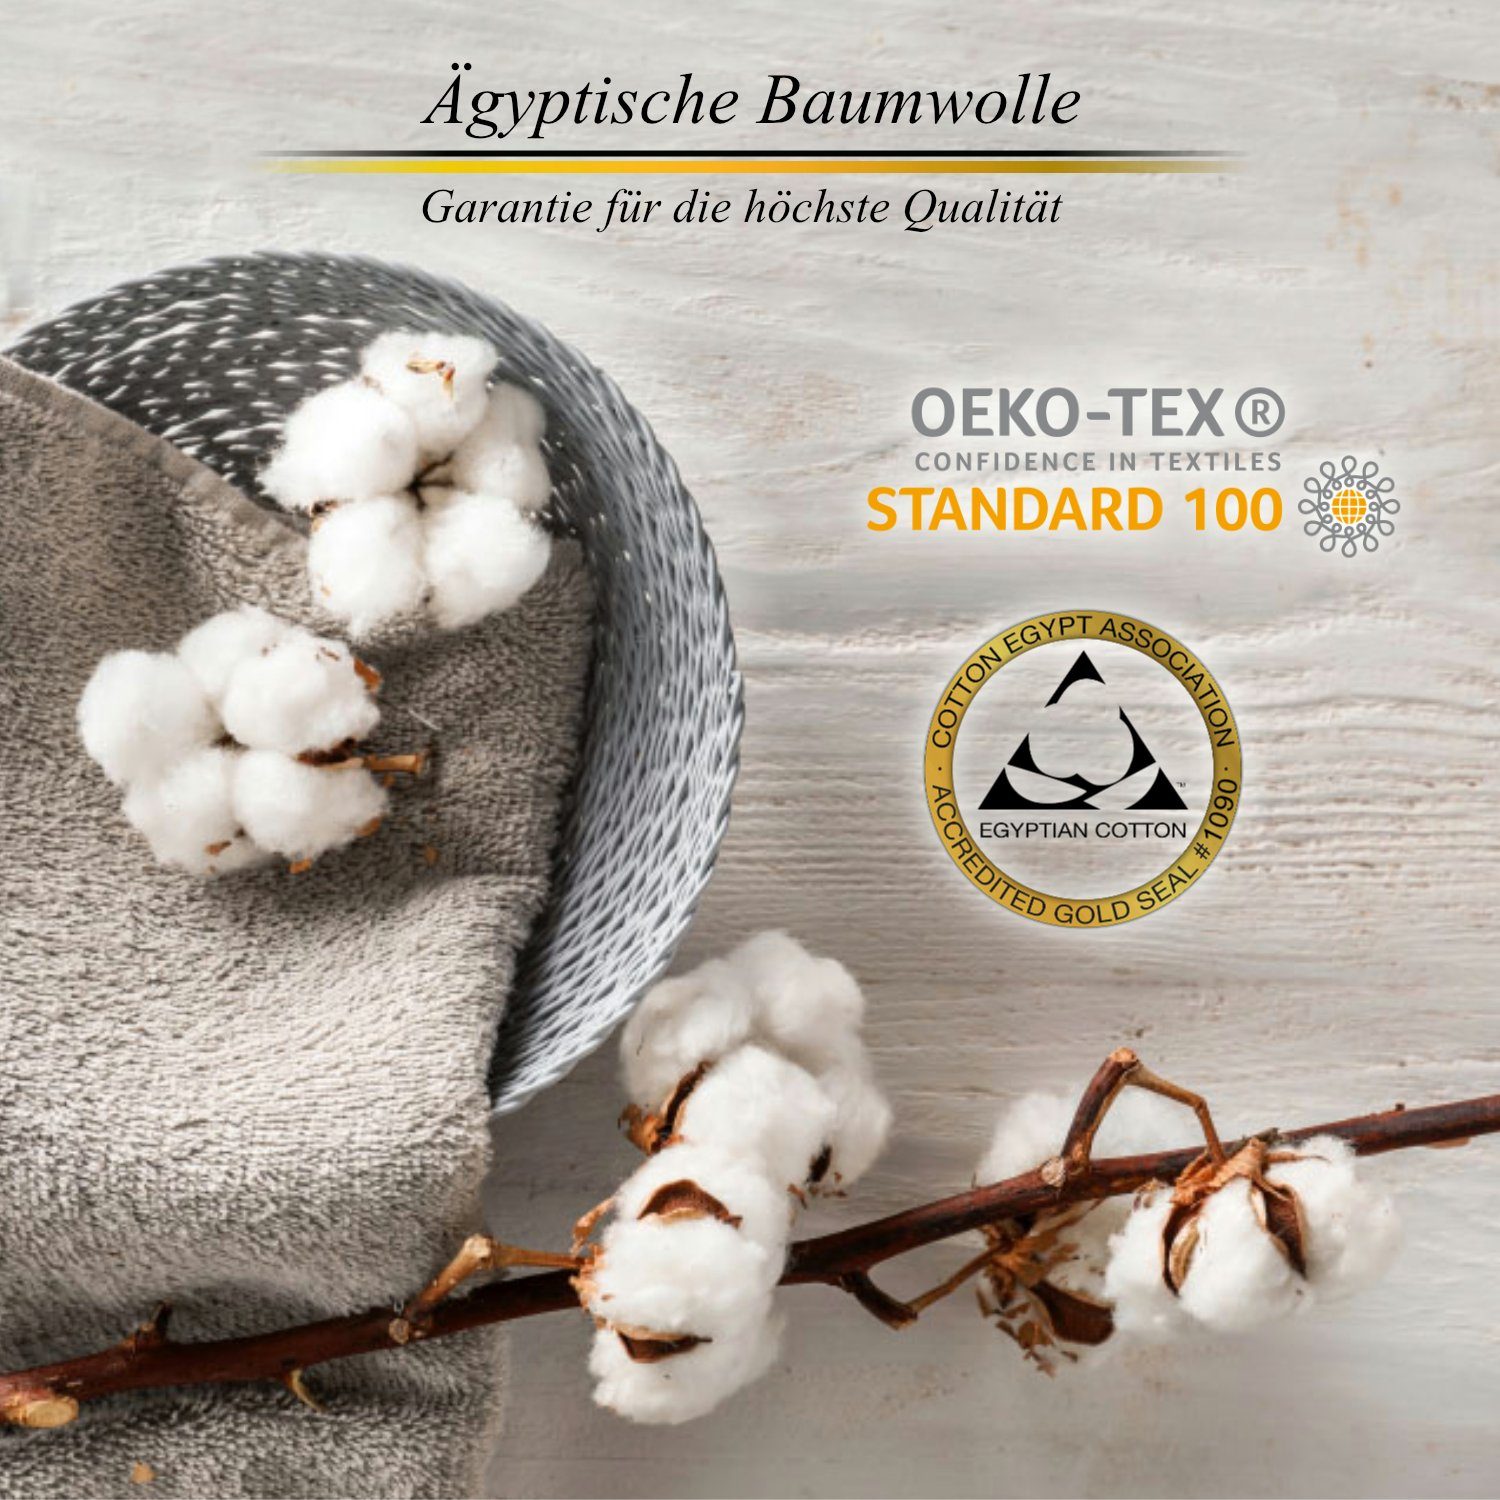 Heimtextilien Handtuch-Sets Aymando Handtuch Set Gepunktet (Spar-Set, 4-tlg), Badetuch kuschlig weich in Premium Qualität aus fa